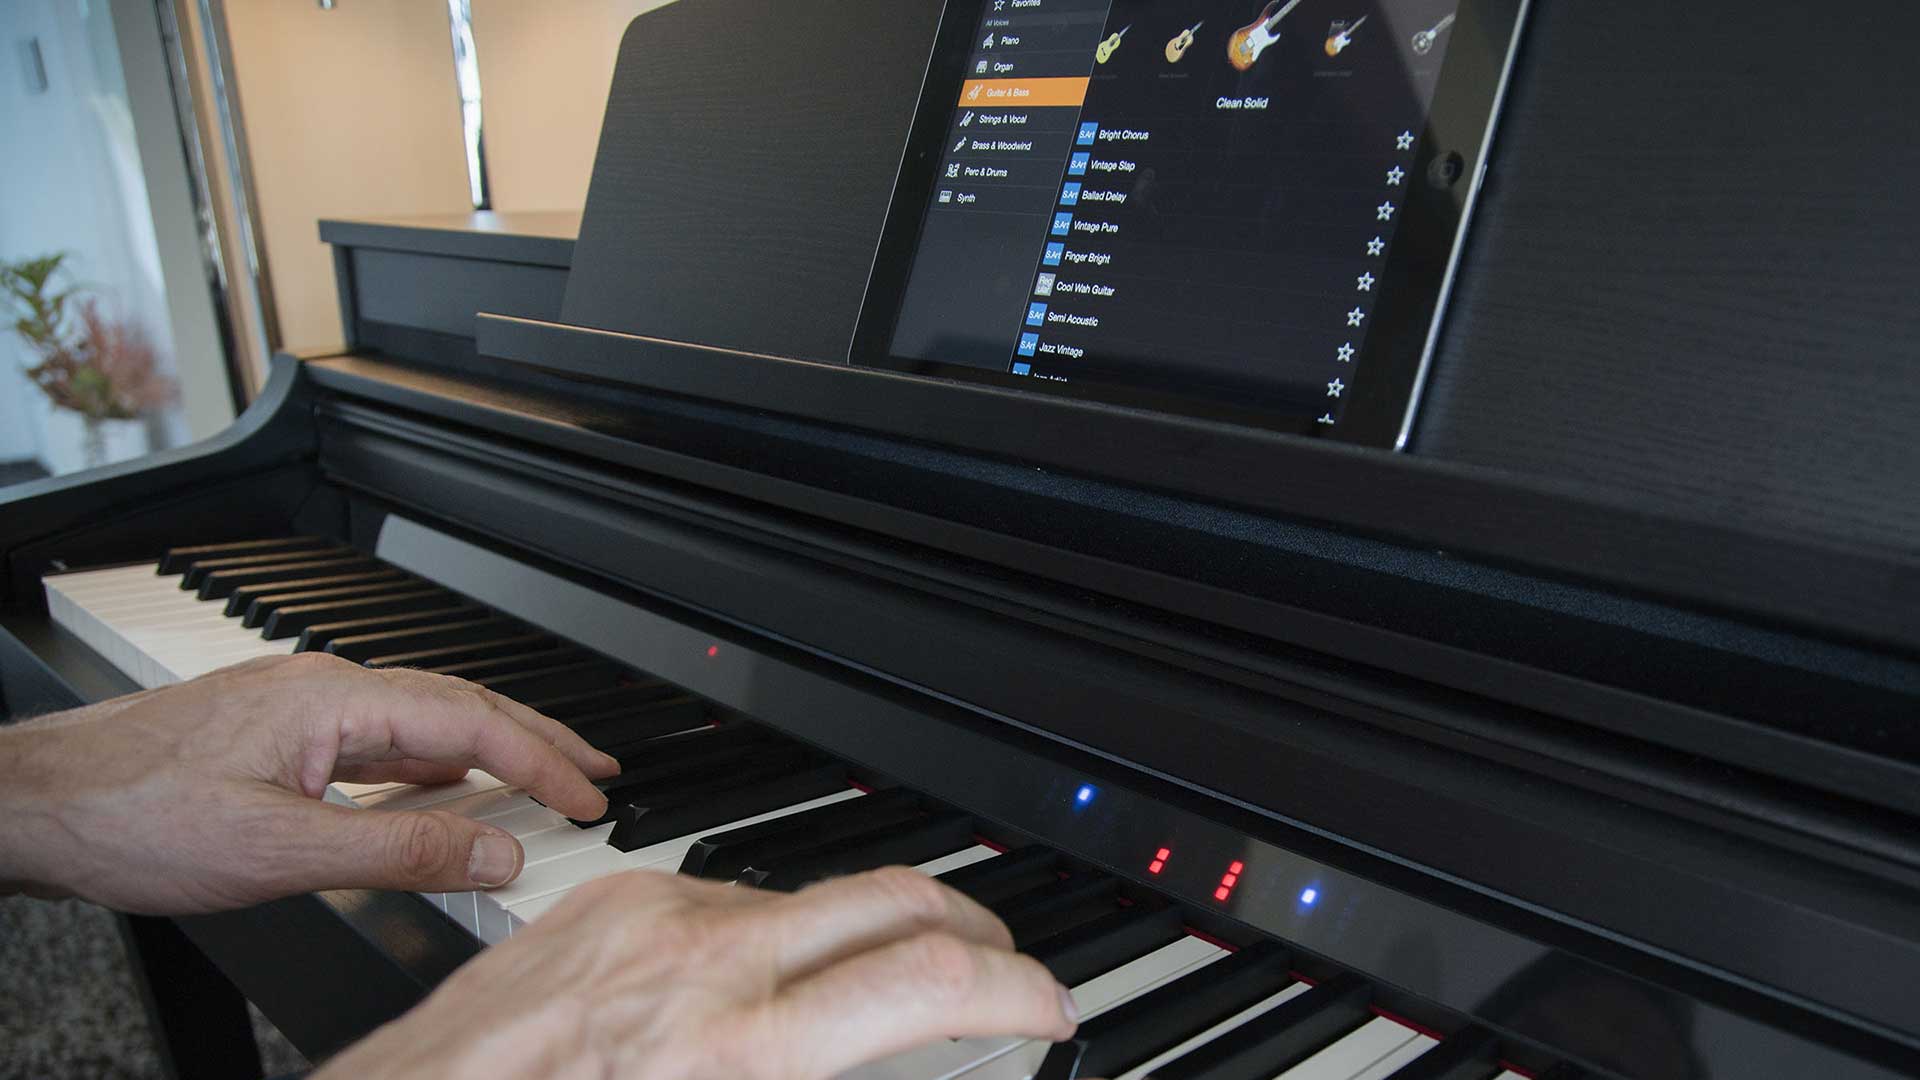 Yamaha CSP-150 Clavinova Smart Piano